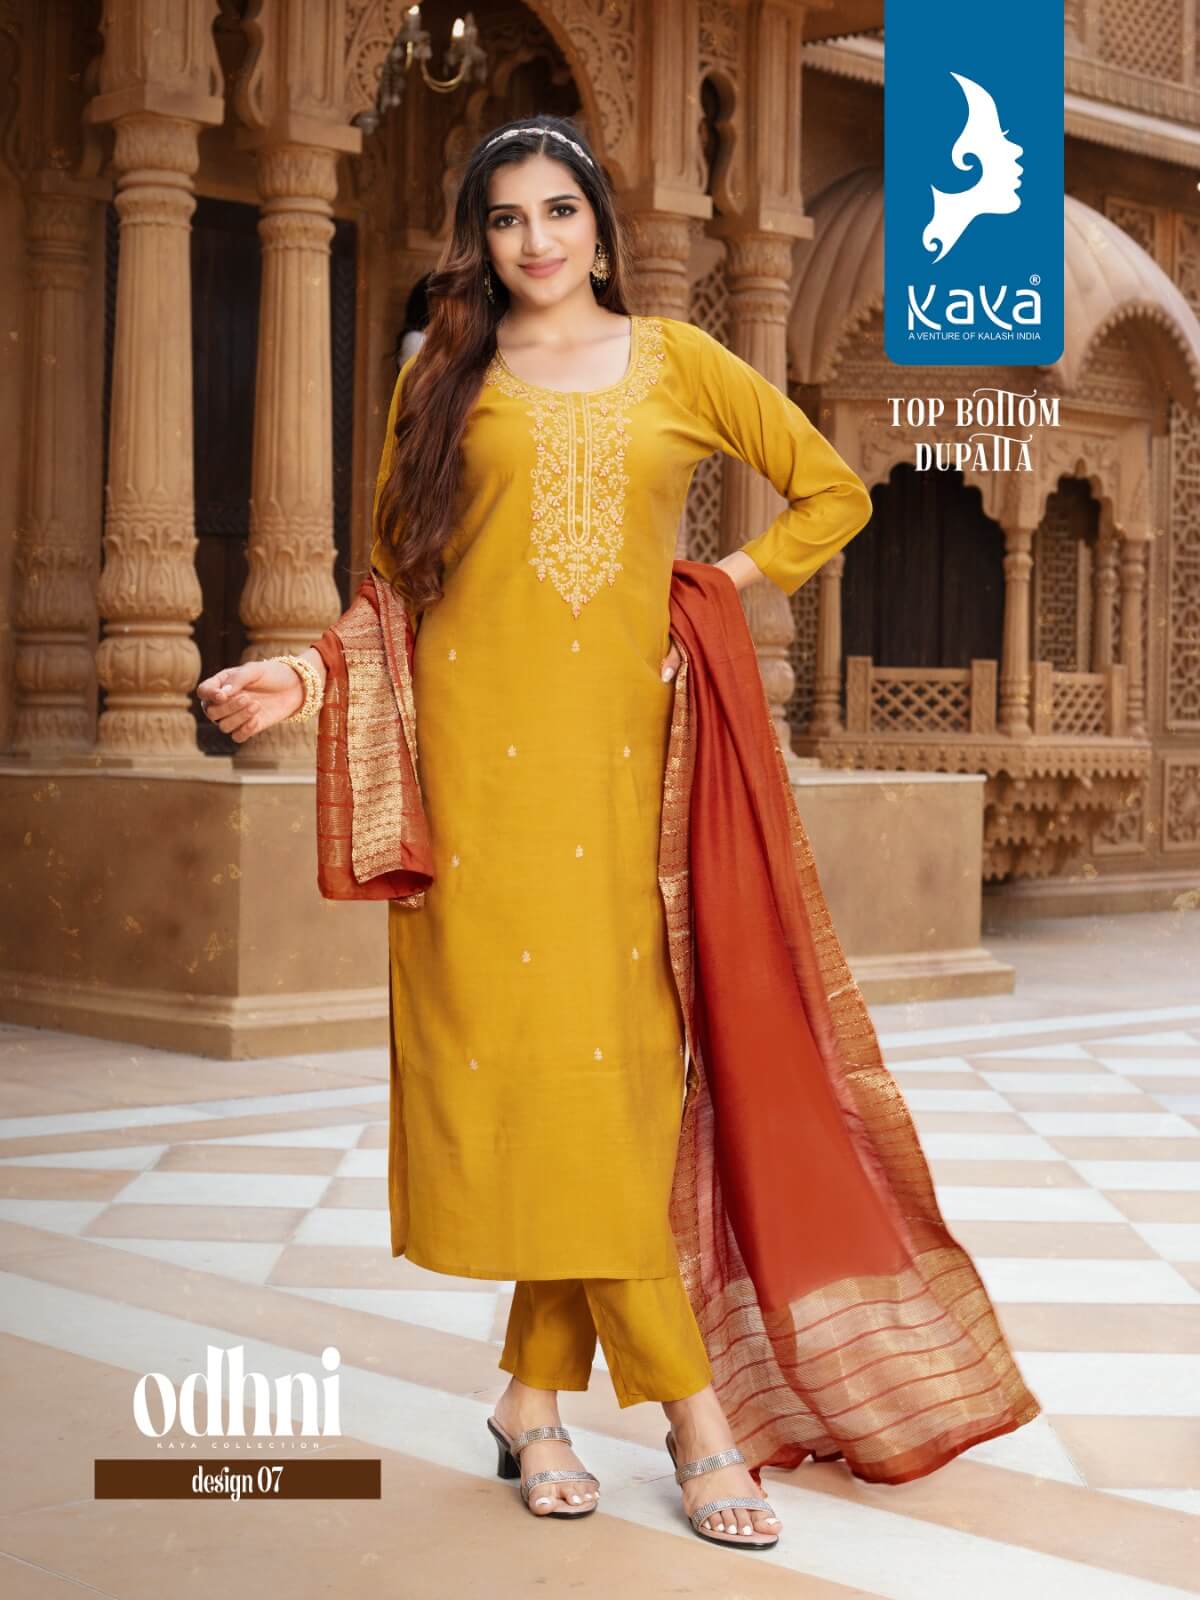 Kaya Odhani Designer Wedding Party Salwar Suits Catalog collection 6